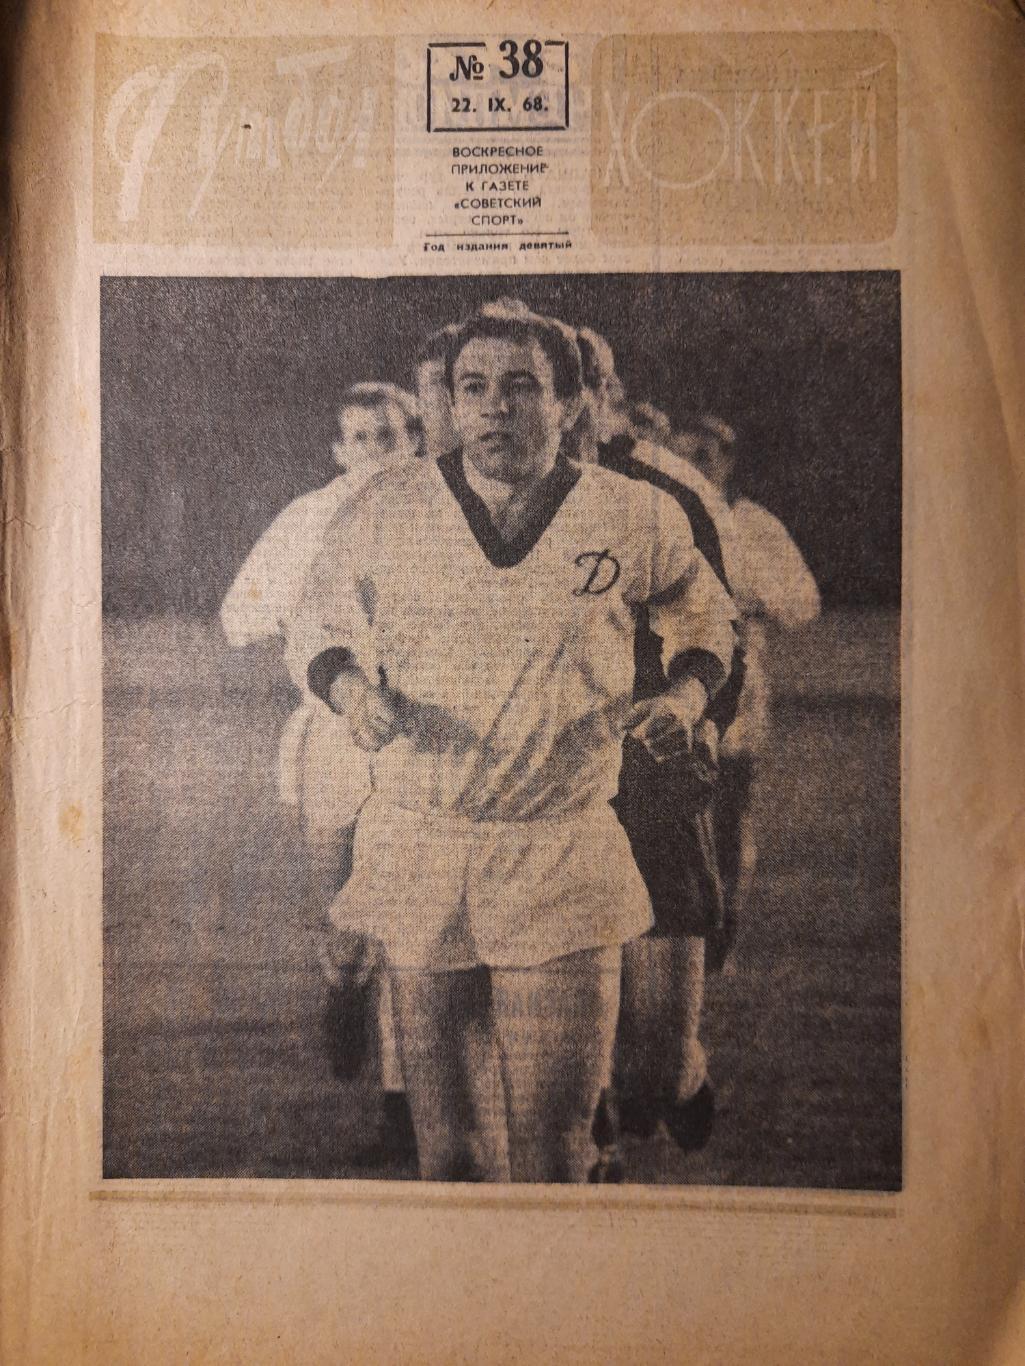 еженедельник футбол-хоккей #38,1968